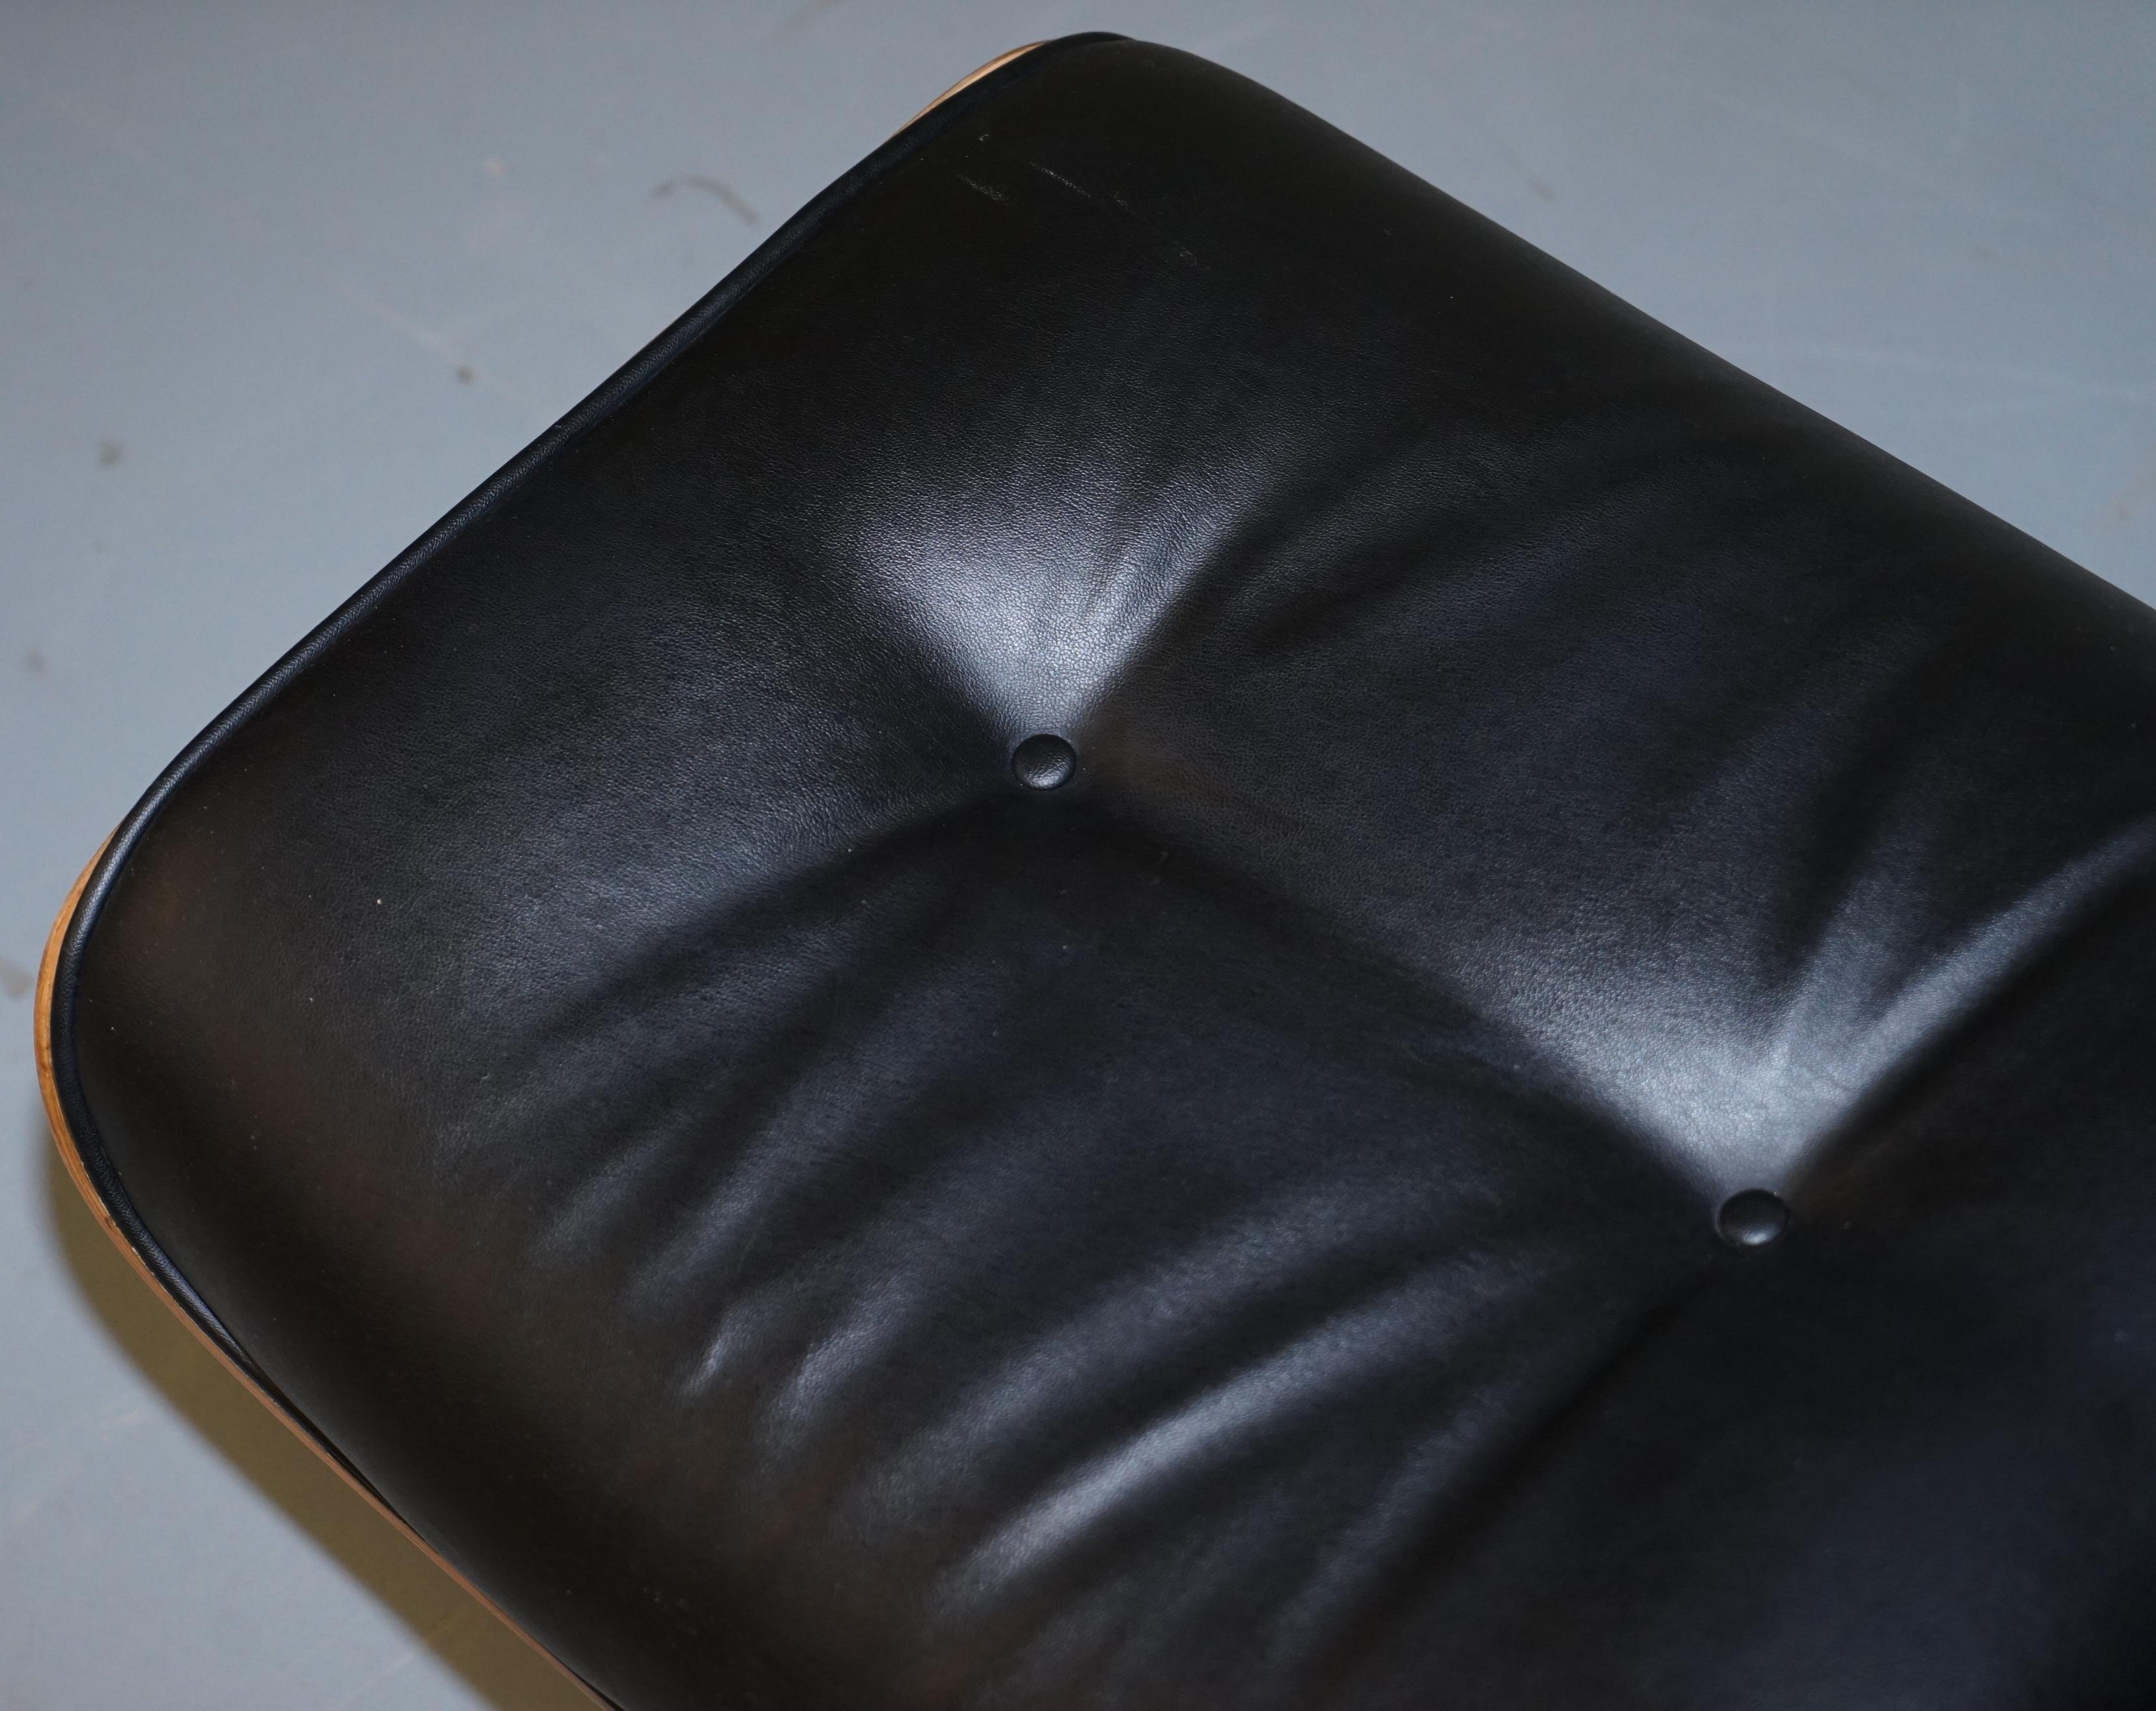 black leather footstool